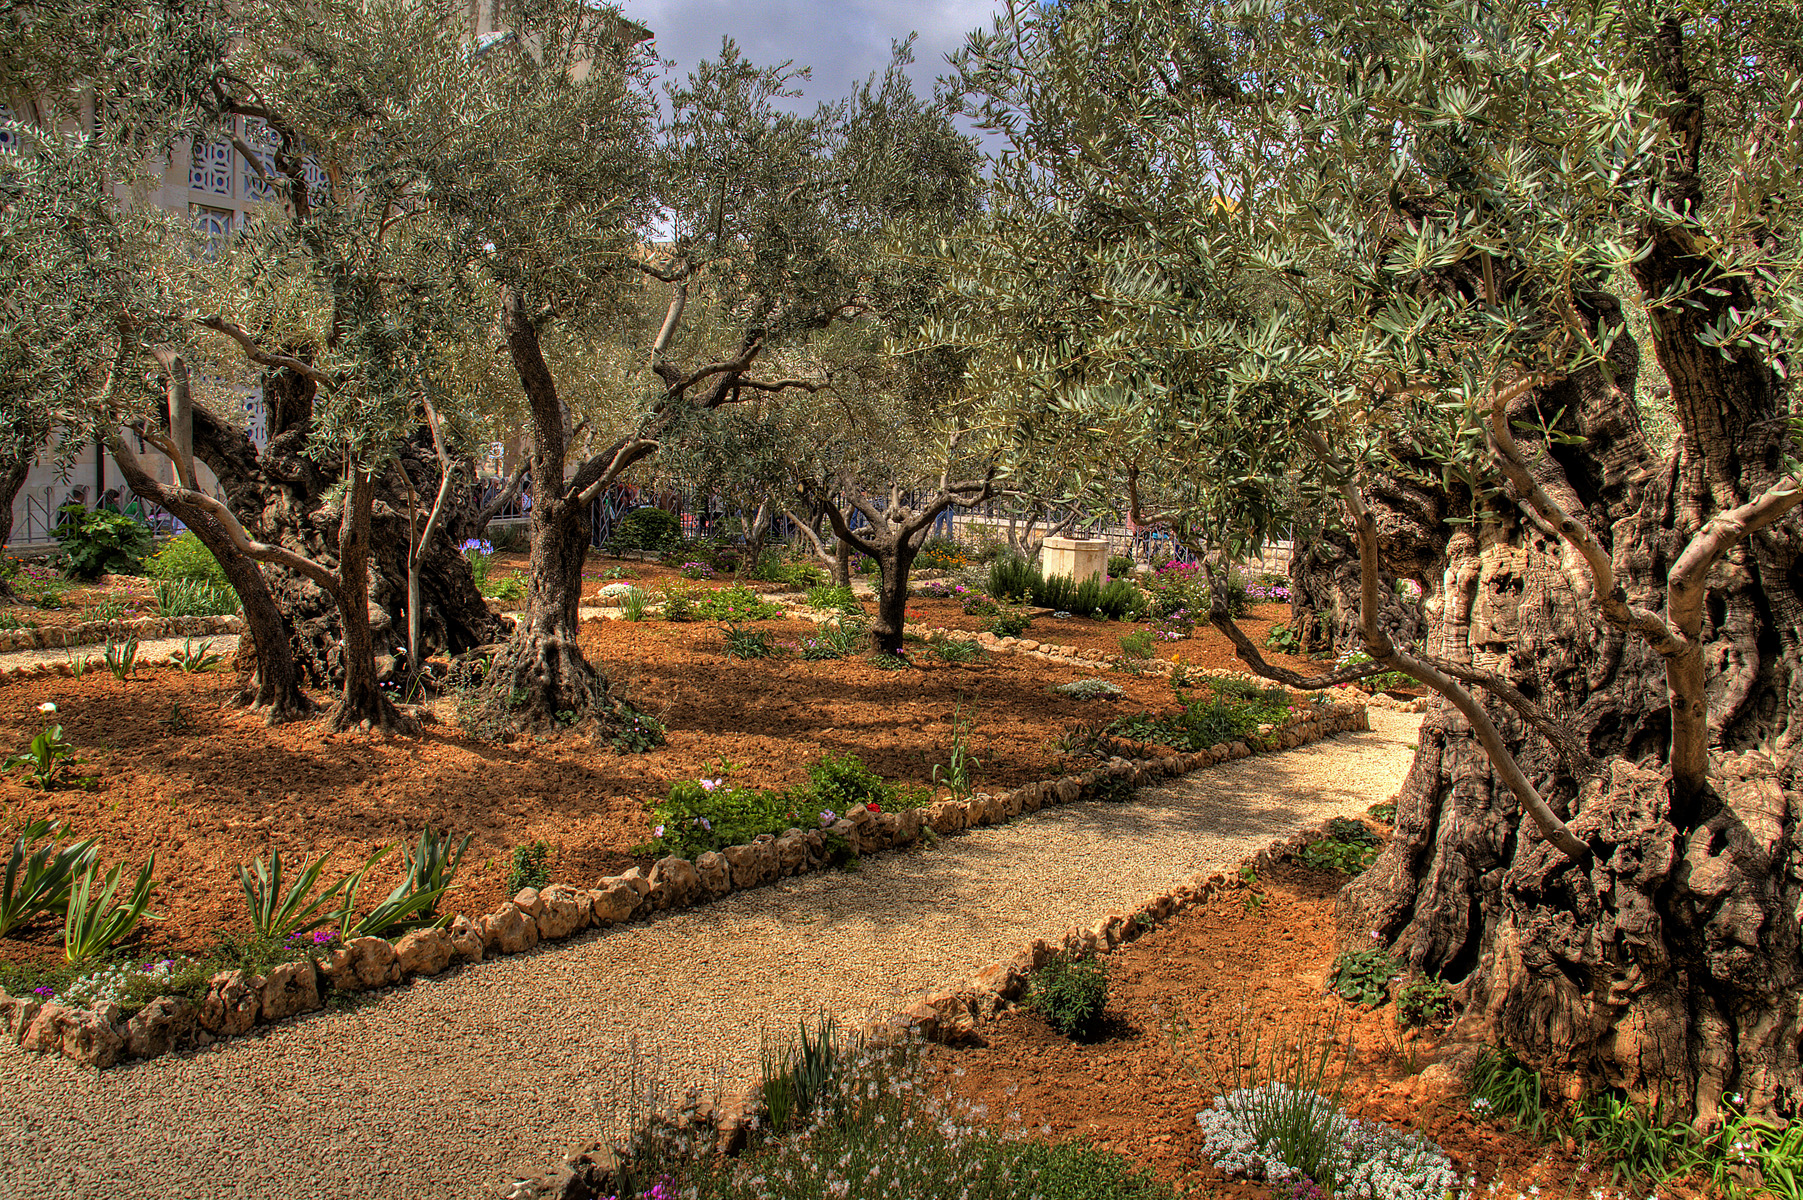 Poema dedicado al Olivo del Huerto de Getsemaní